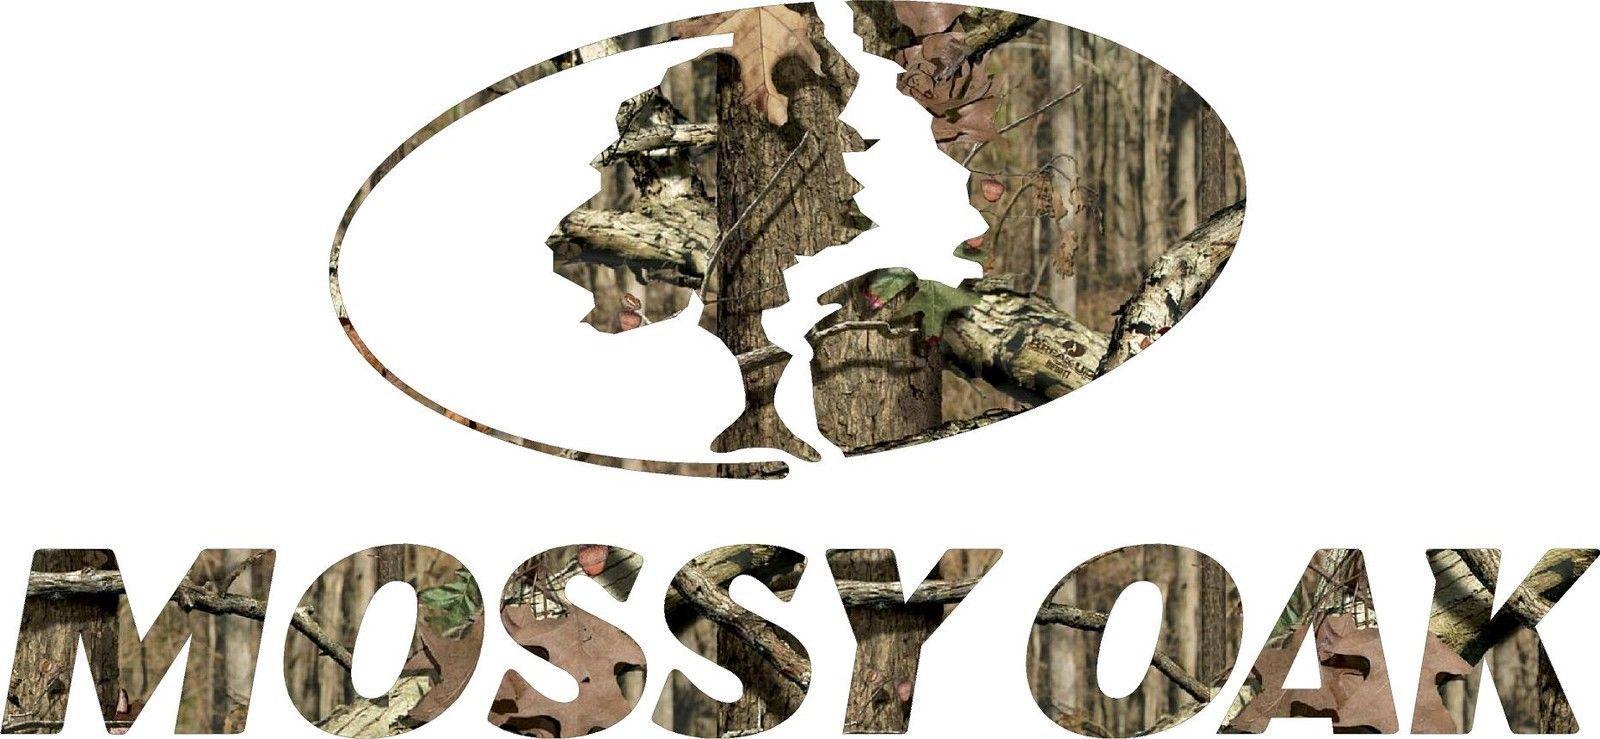 Mossy Oak Logo - Mossy oak Logos